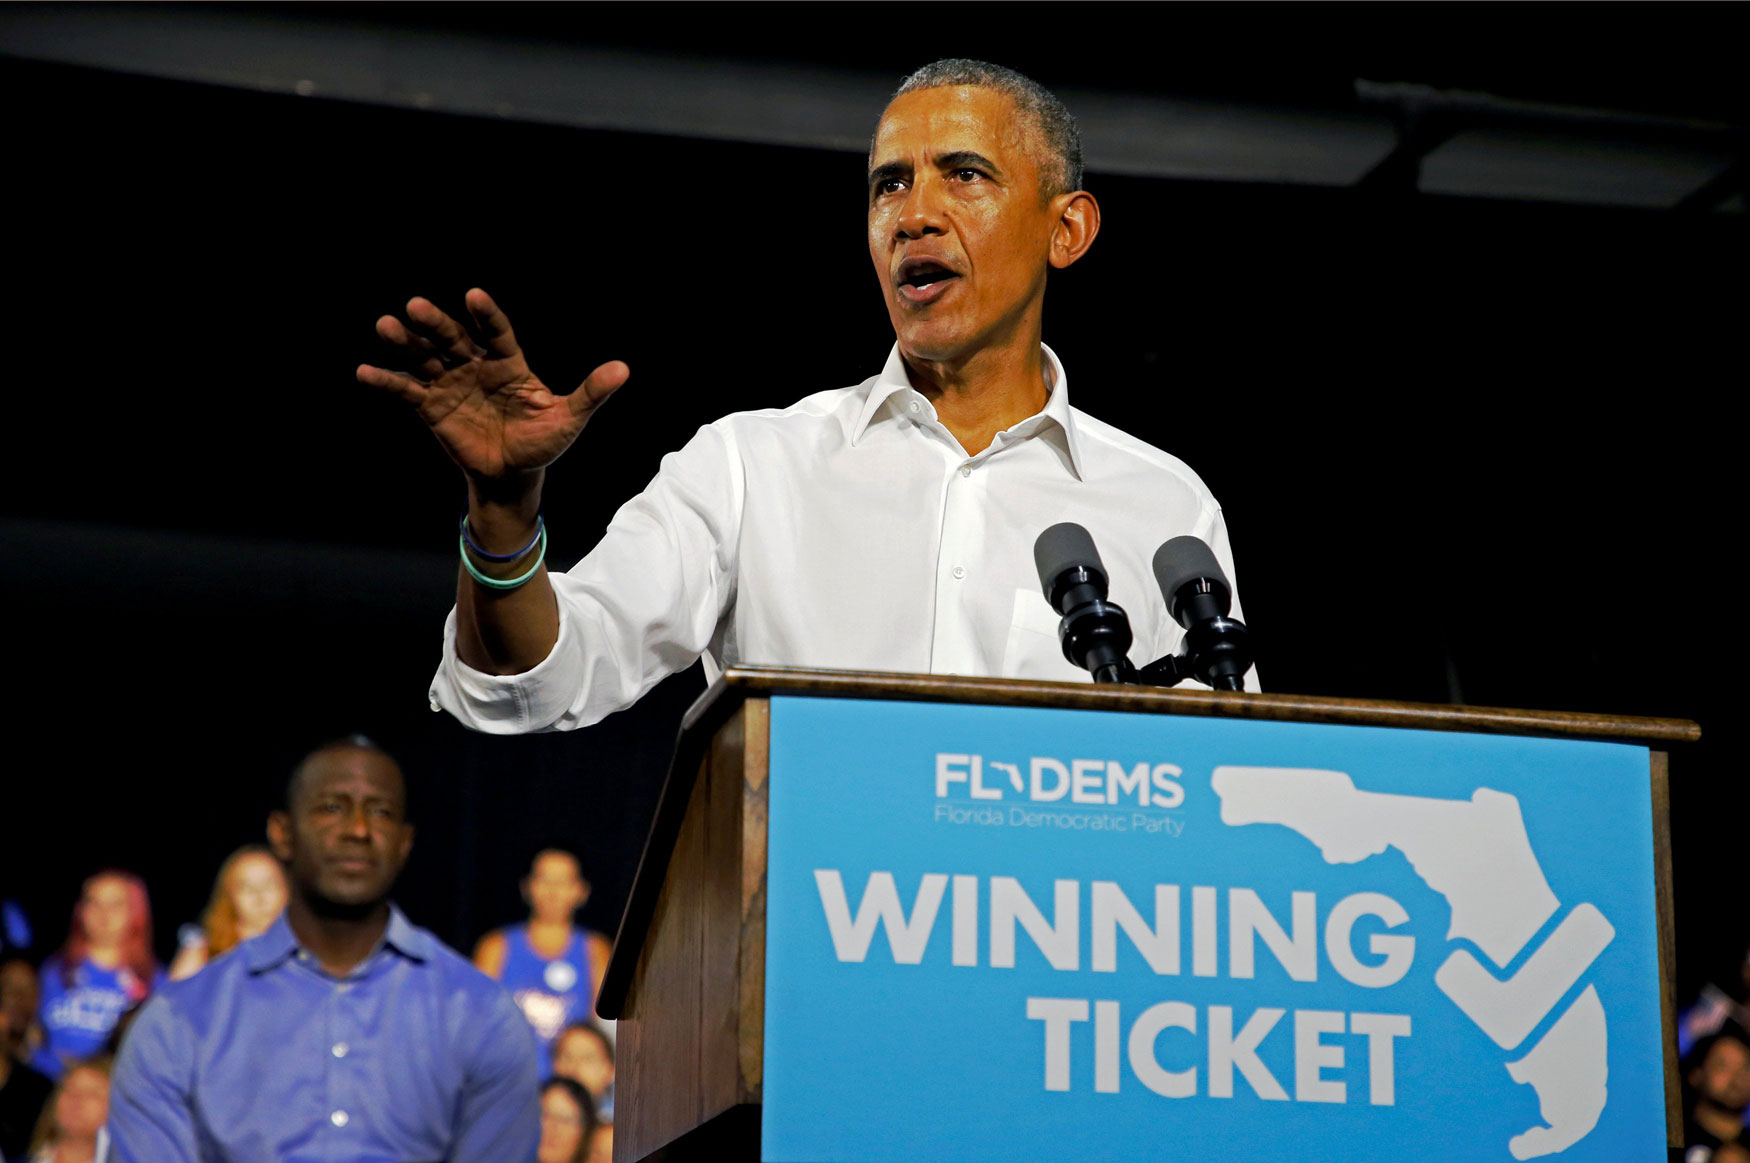 الرئيس الاميركي السابق باراك أوباما يحفز الناخبين للتصويت لصالح الديمقراطيين باستعراض "أخطاء" ترامب